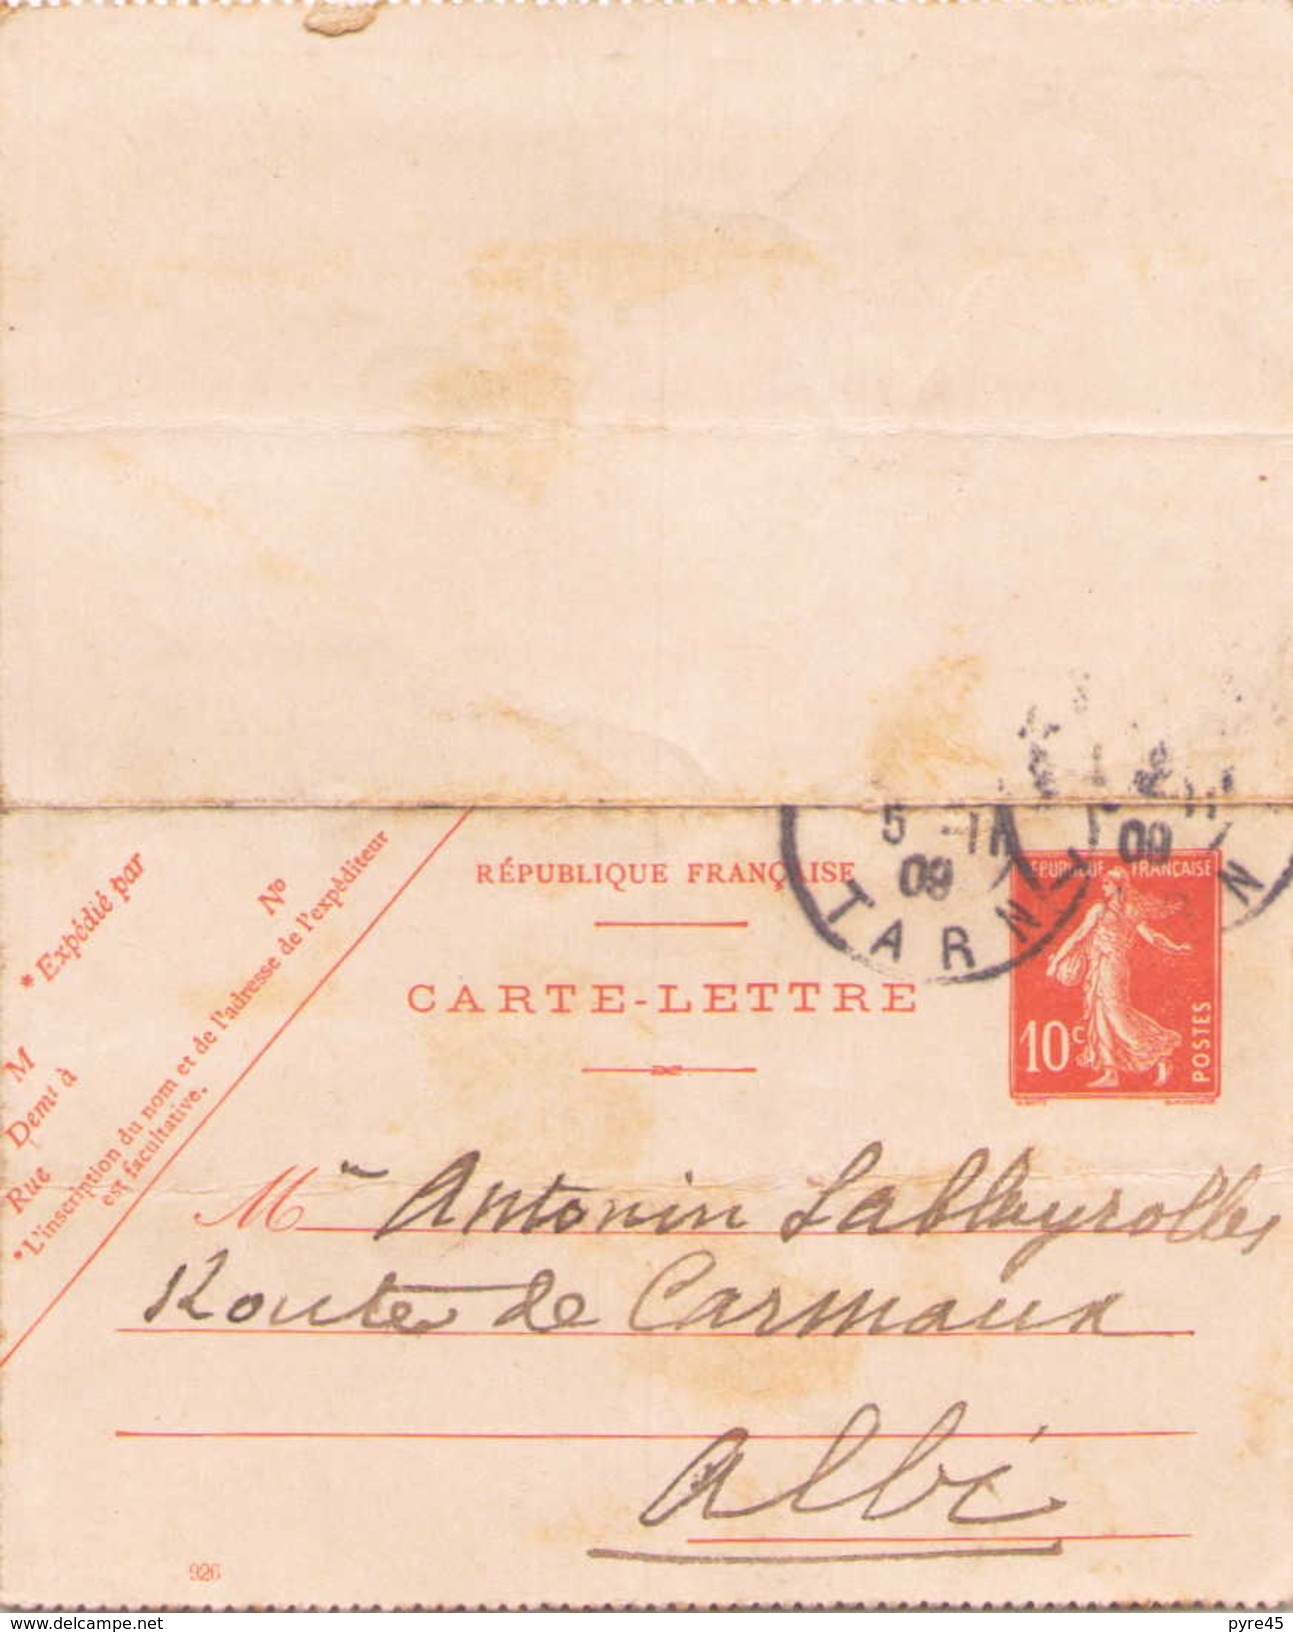 FRANCE CARTE LETTRE DU 5 NOVEMBRE 1911 DE ALBI POUR ALBI - Cartes-lettres